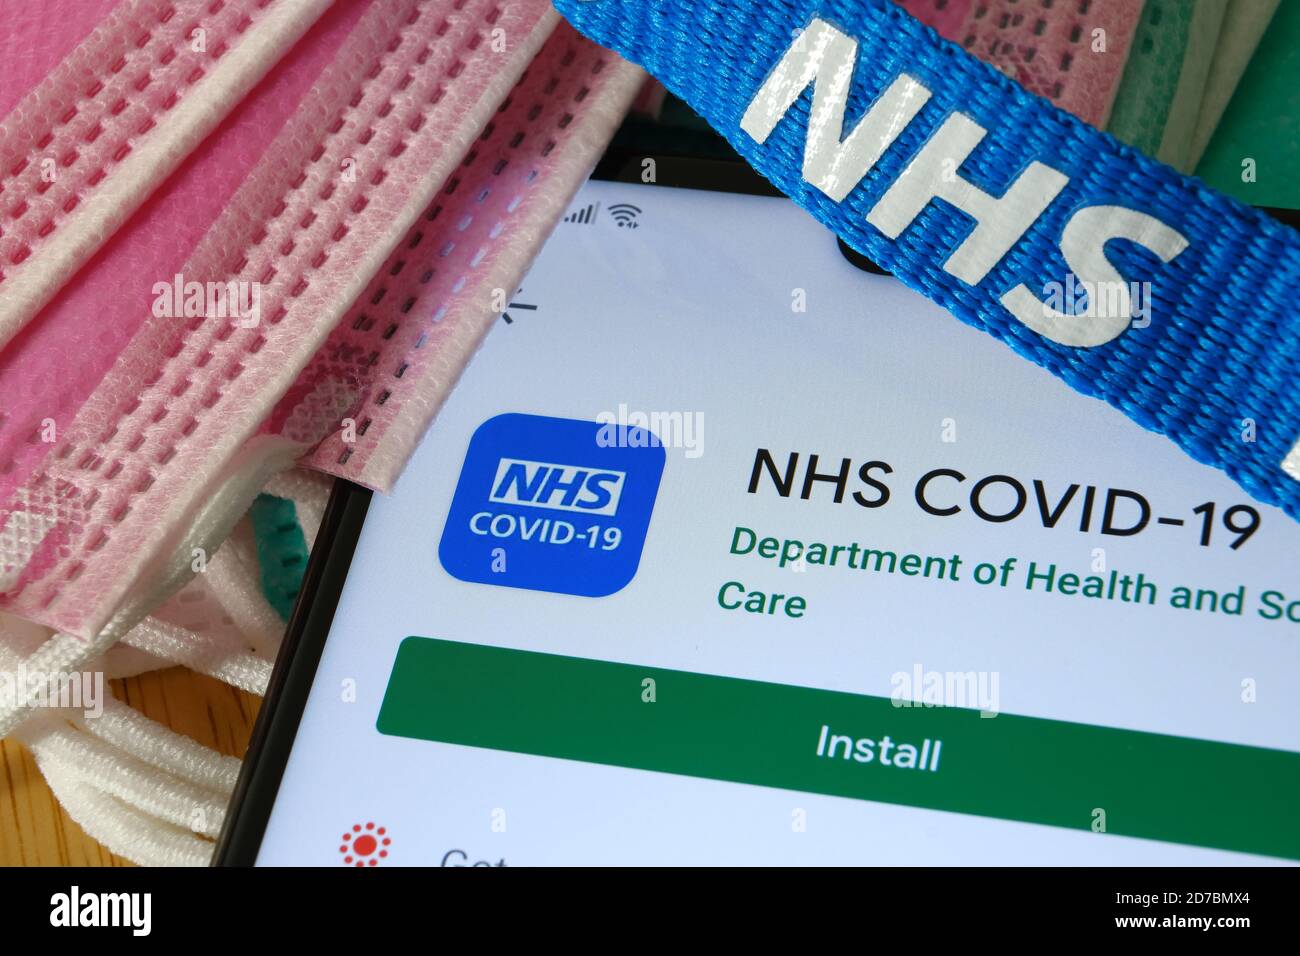 Manchester / Großbritannien - 17. Oktober 2020: NHS COVID-19 App im Play Store auf dem Bildschirm des Smartphones neben viralen Masken und NHS Lanyard zu sehen. Stockfoto